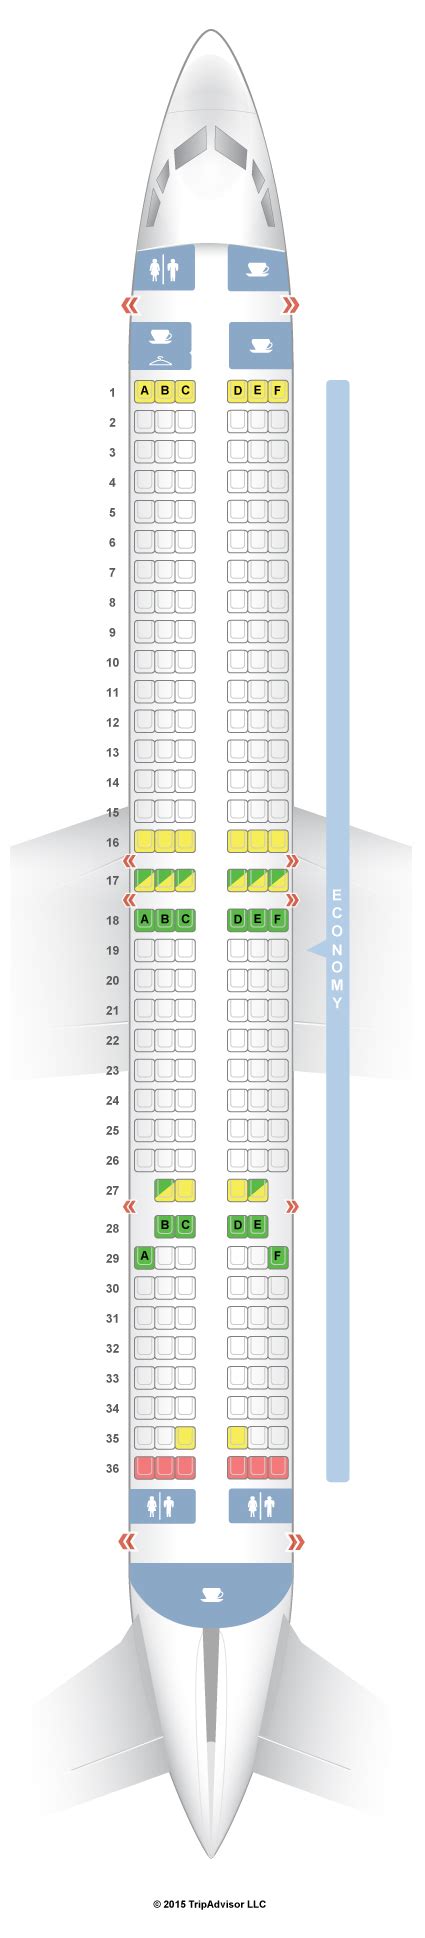 Boeing 737 900 Seating Chart Jet Airways Cabinets Matttroy